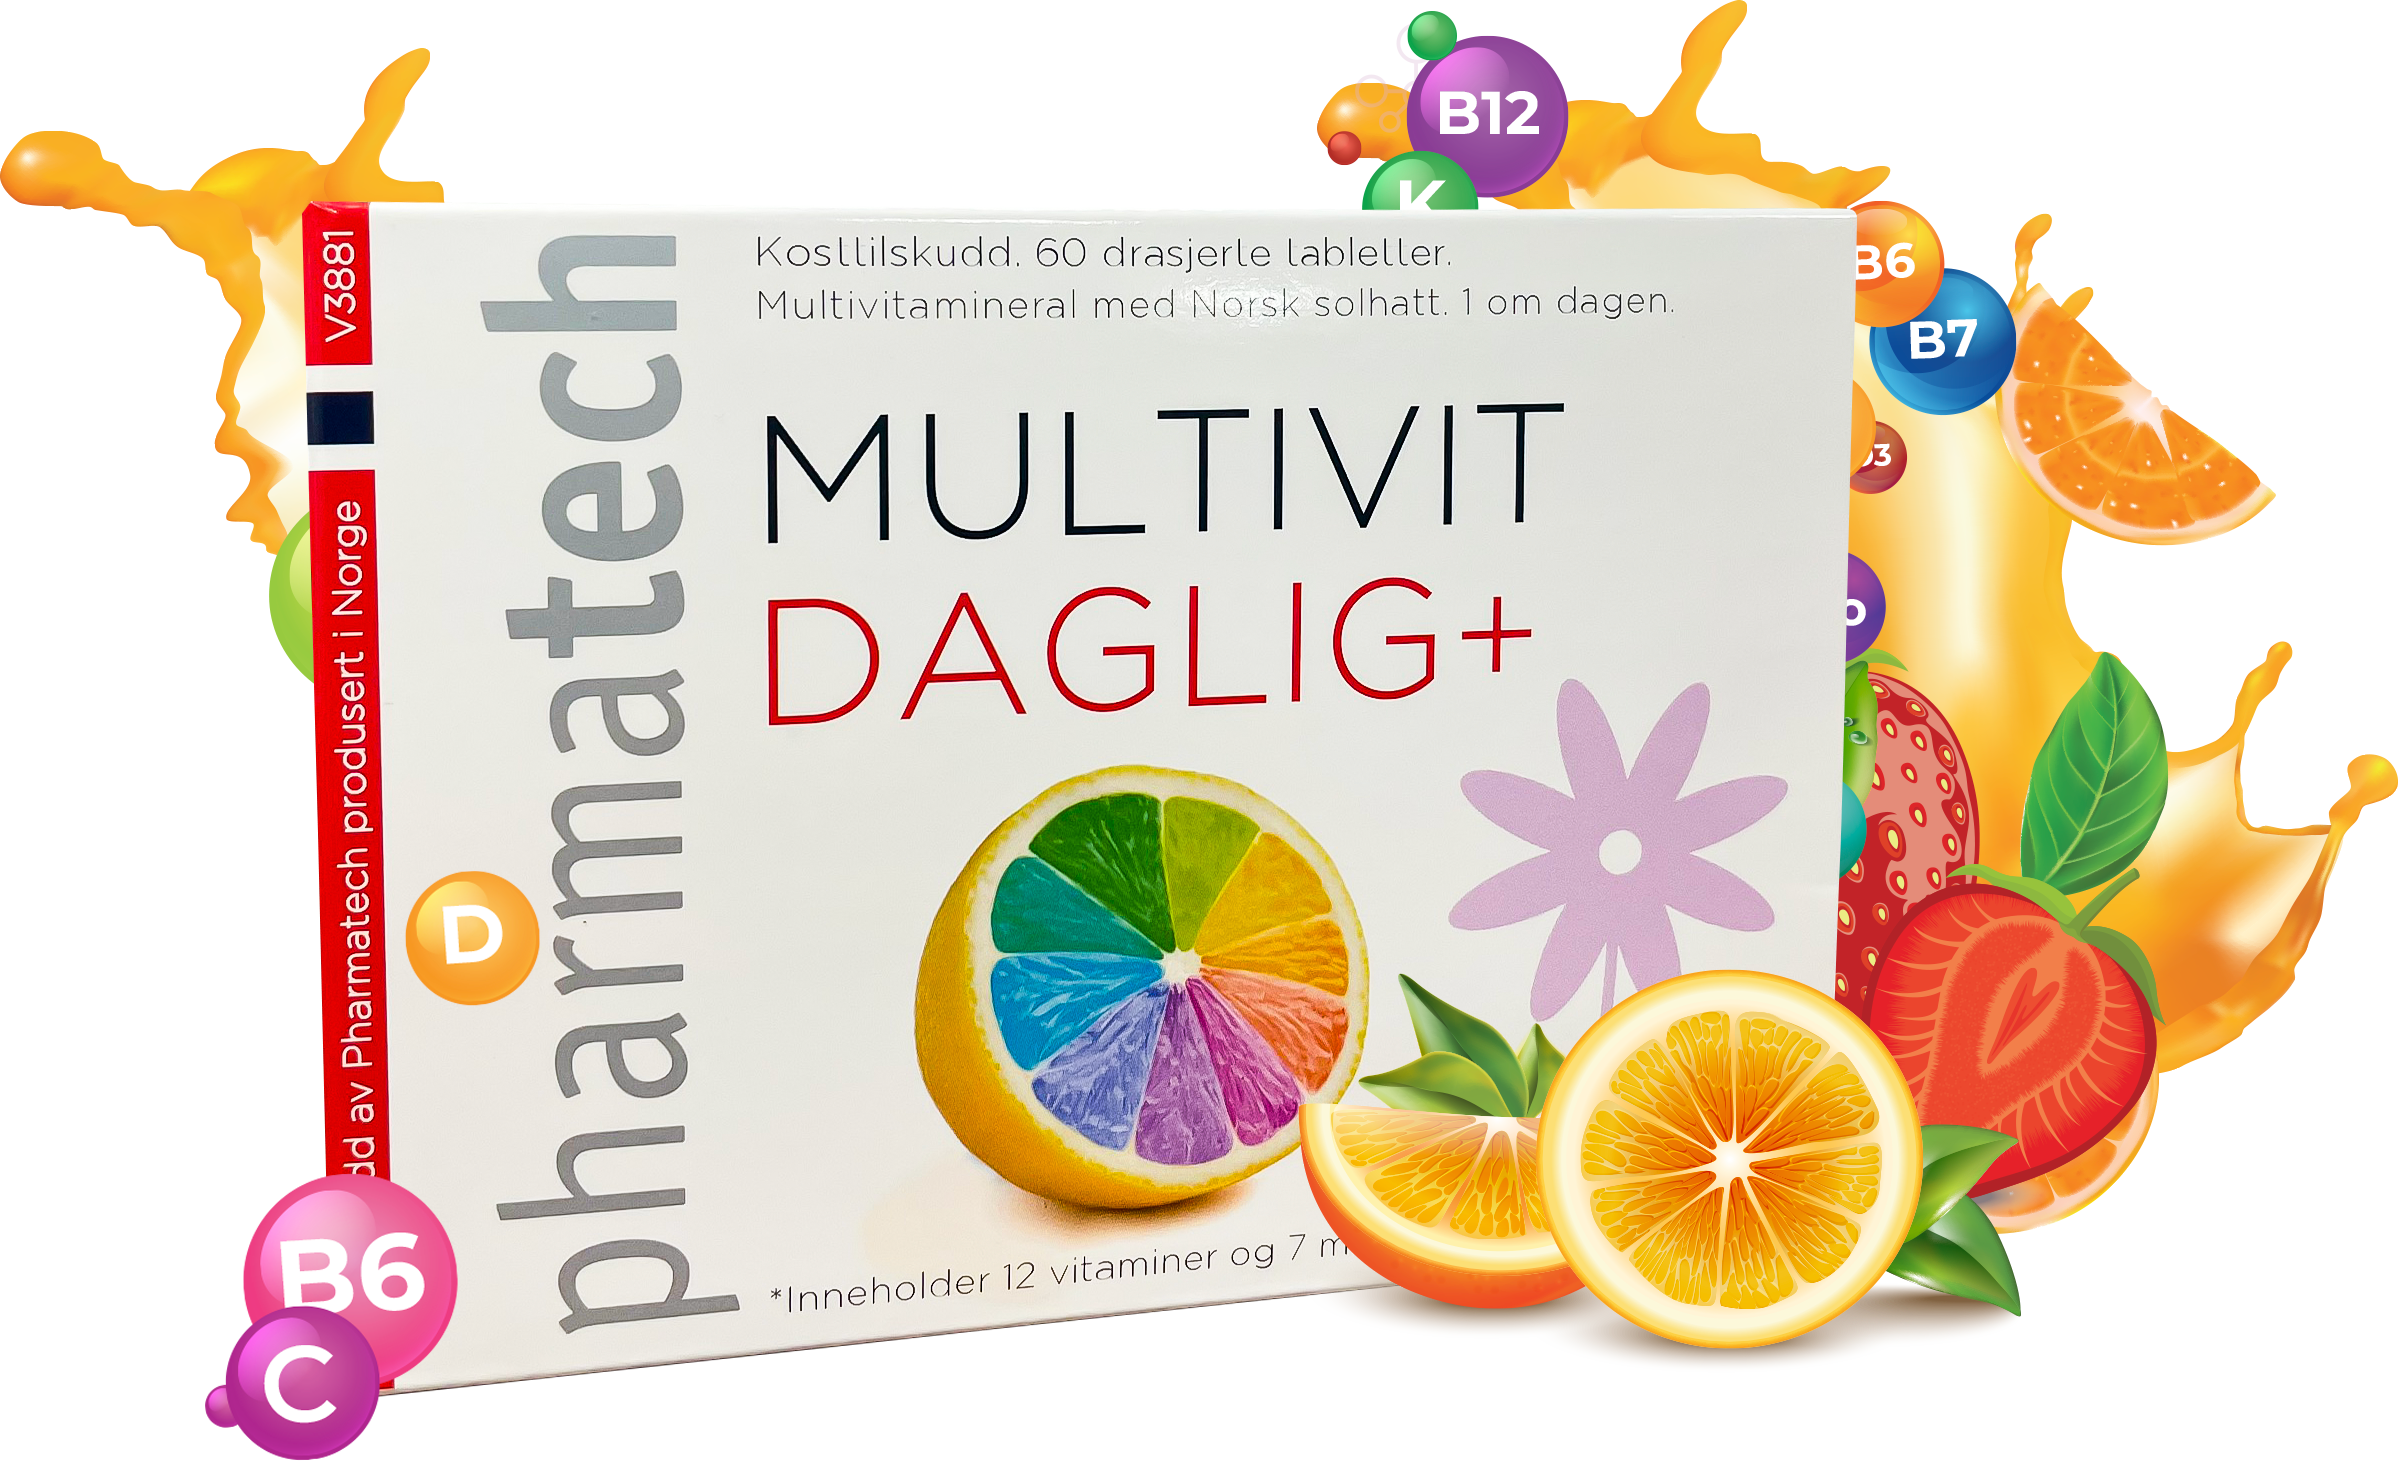 Combo viên uống bảo vệ sức khỏe Vitamin tổng hợp Multivit Daglig và Fluor Daglig Pharmatech